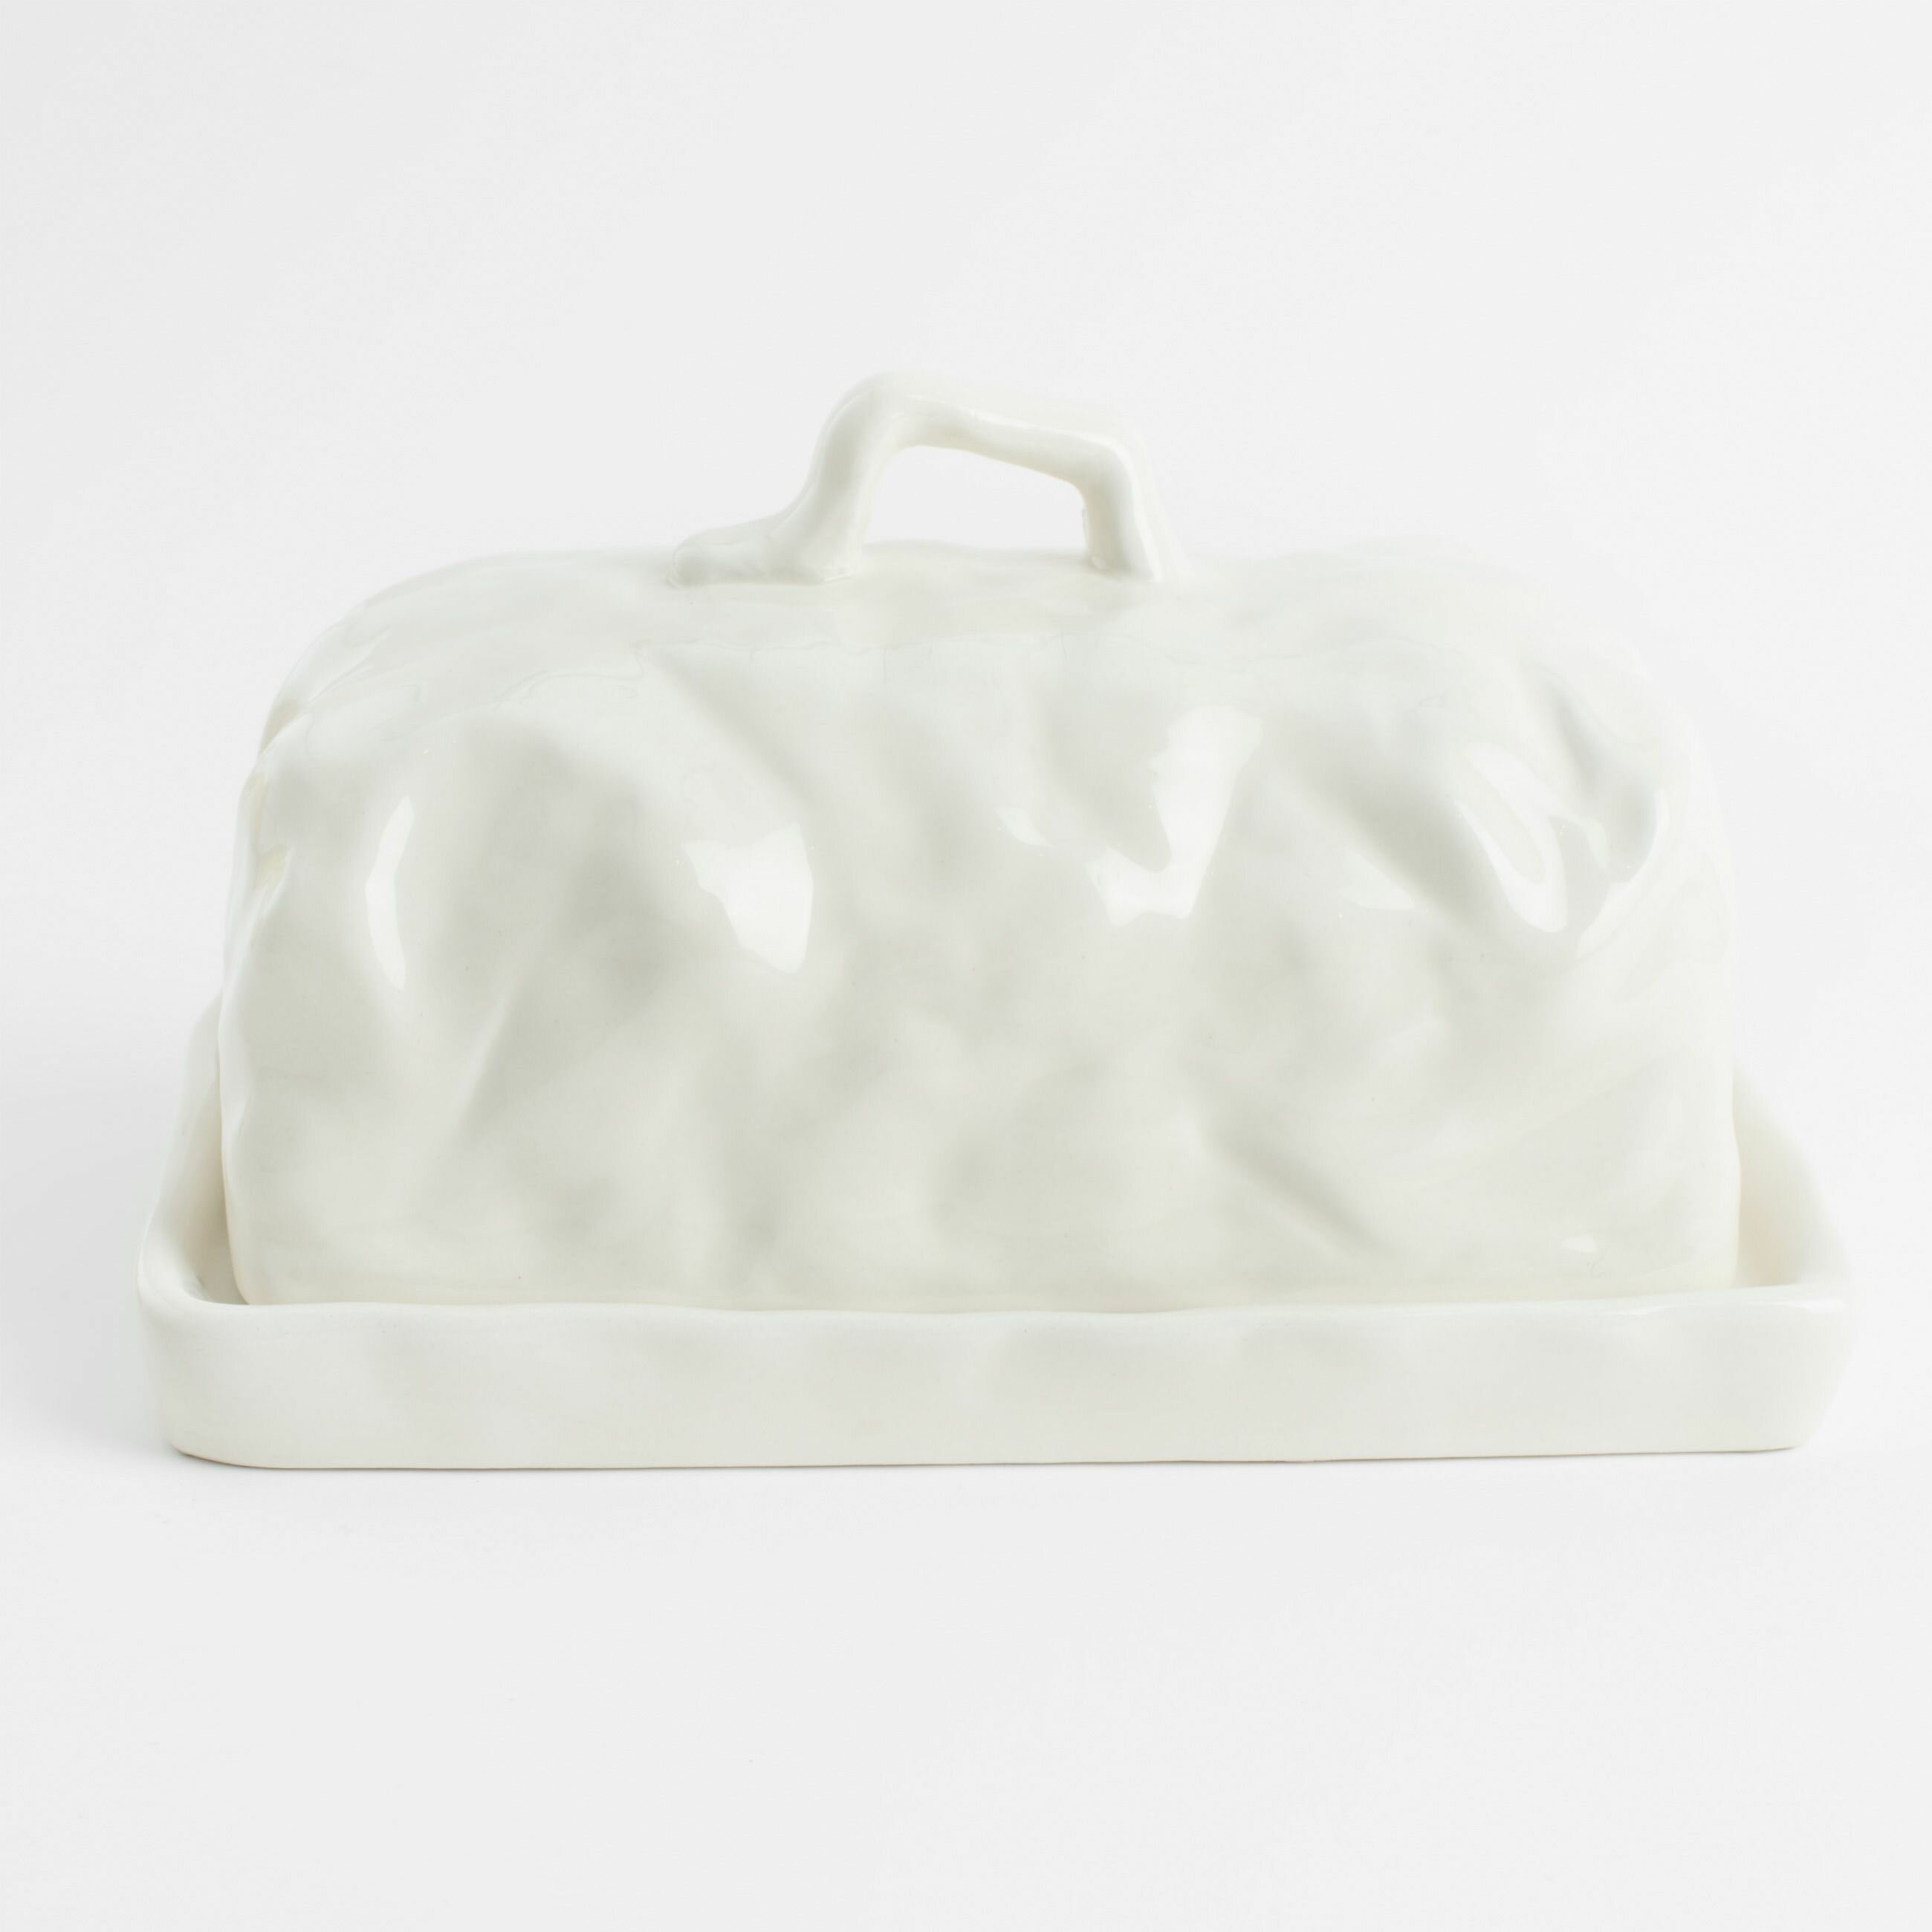 Масленка, 18 см, керамика, прямоугольная, молочная, Мятый эффект, Crumple